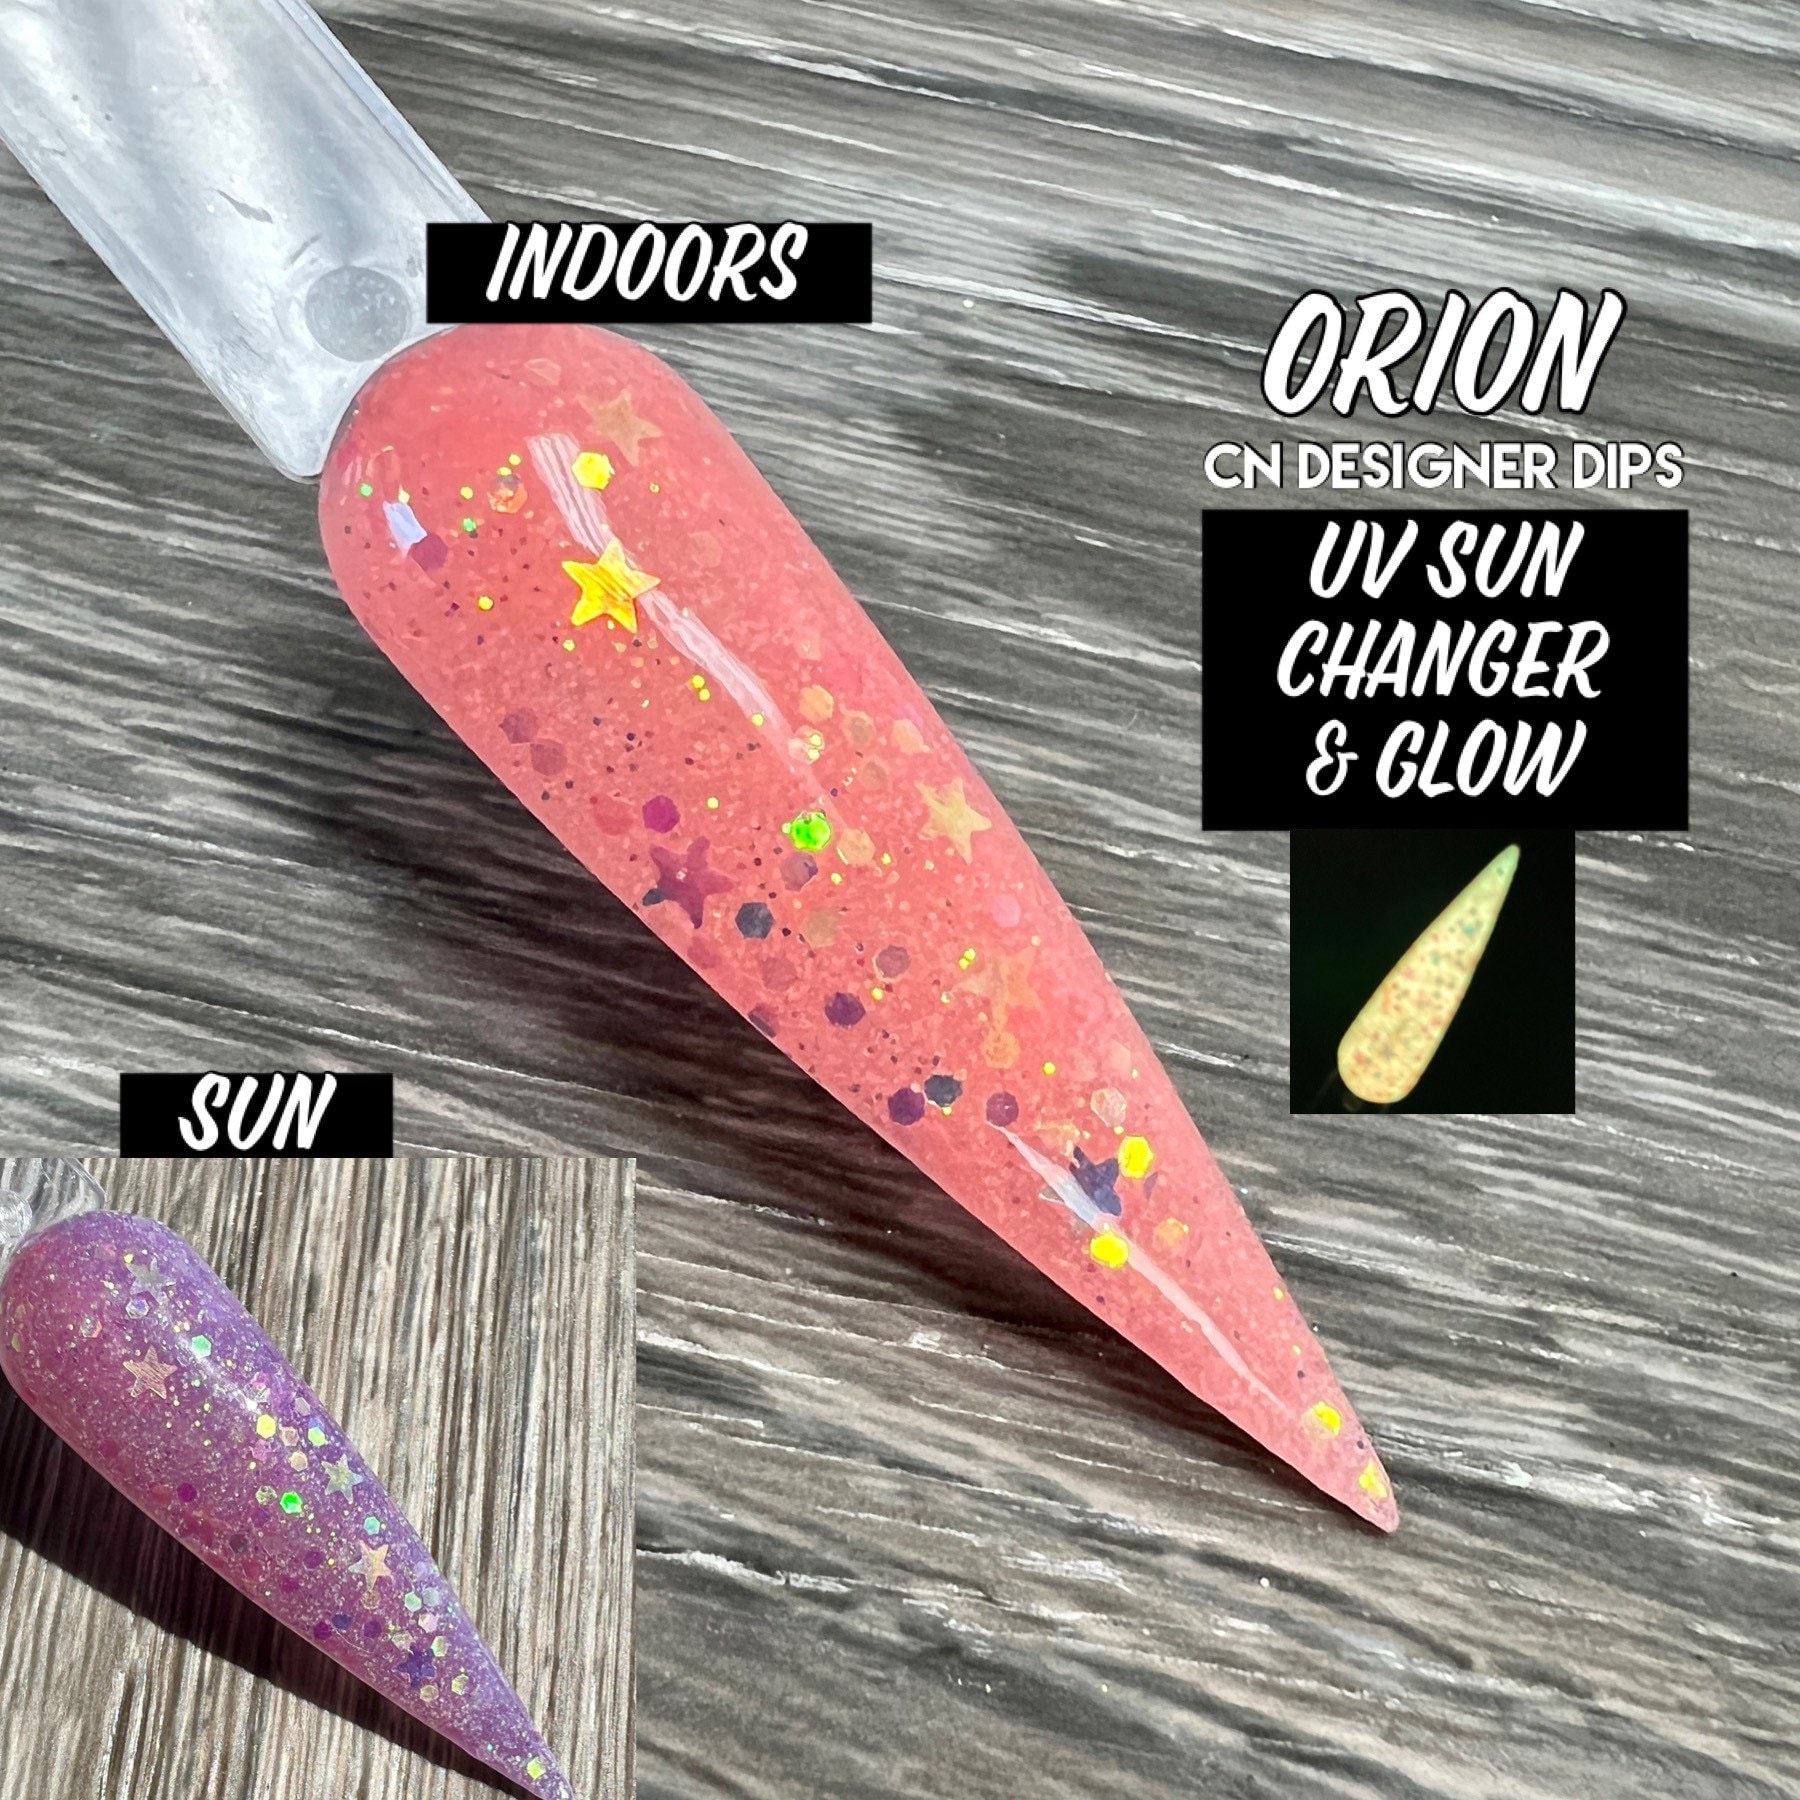 Orion - Dip Pulver, Pulver Für Nägel, Nagel Dip, Nagel, Acryl von CNDesignerDips